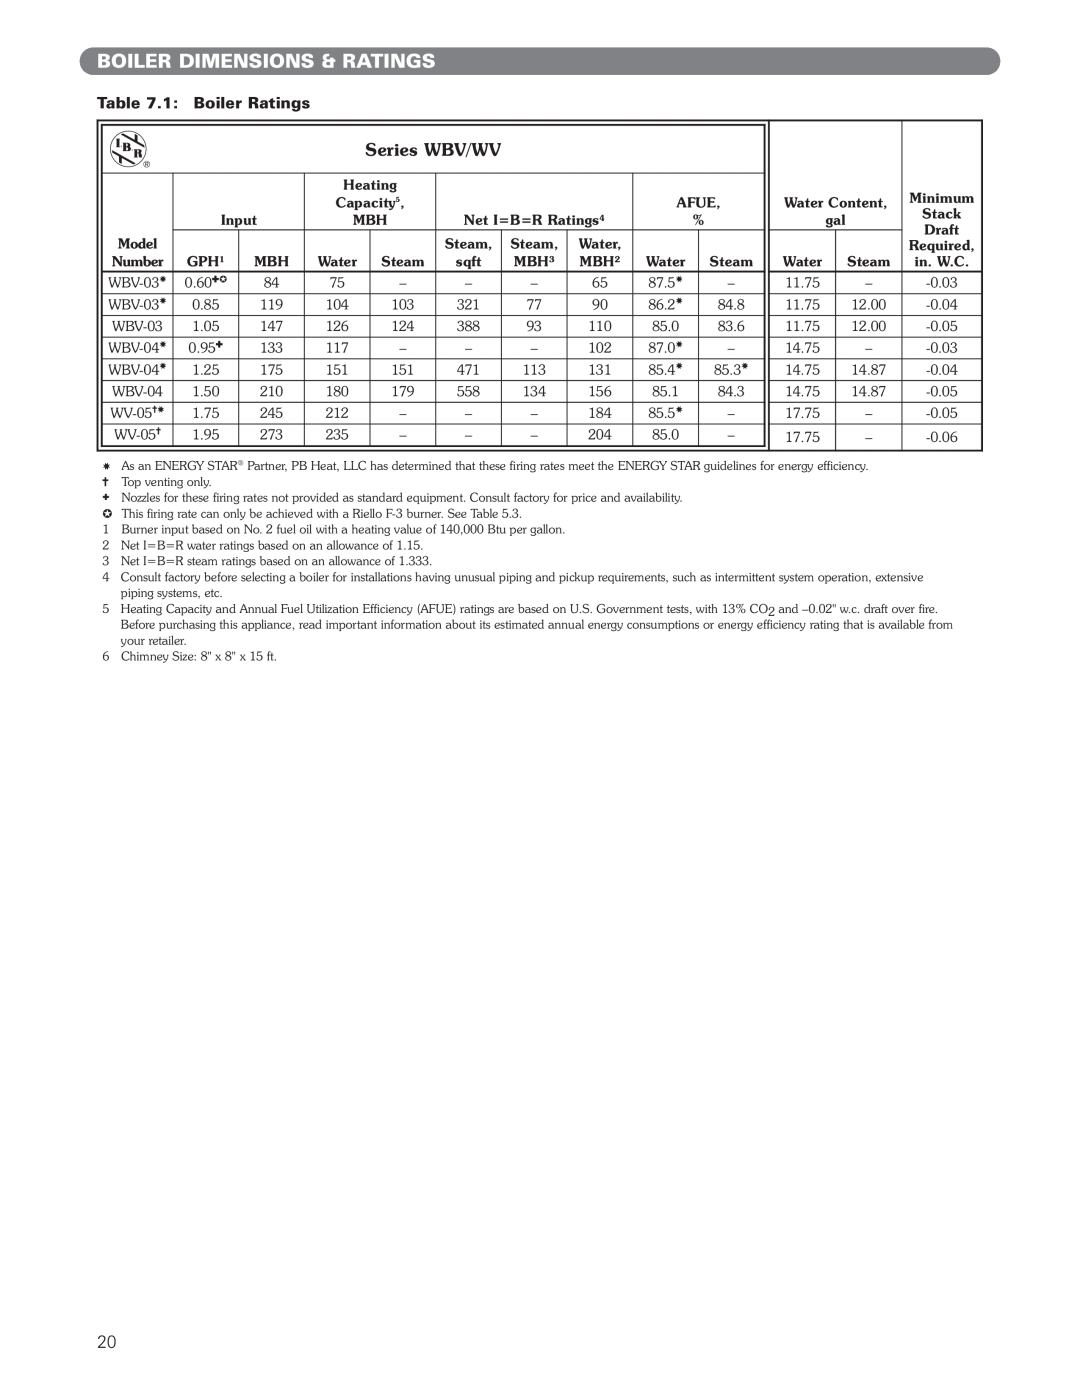 PB Heat WV Series, WBV Series manual Boiler Dimensions & Ratings, Series WBV/WV, 1: Boiler Ratings 